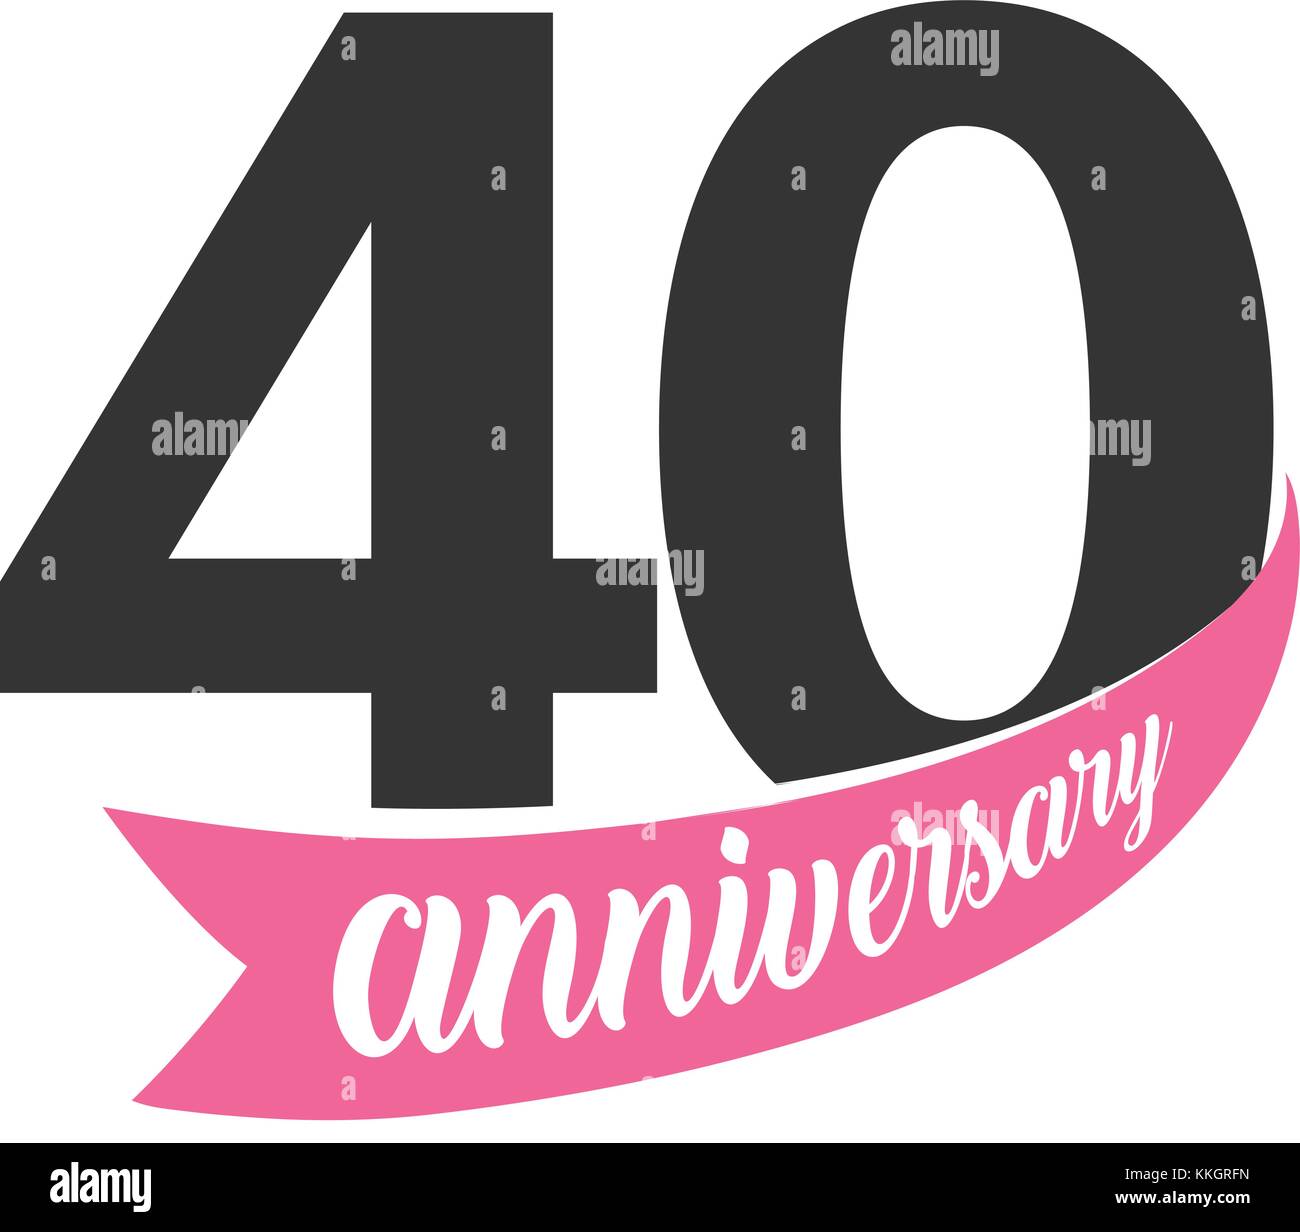 40e anniversaire logo vector. numéro 40. L'illustration pour la carte de vœux, invitation, affiche, mariage, célébration, certificat Illustration de Vecteur